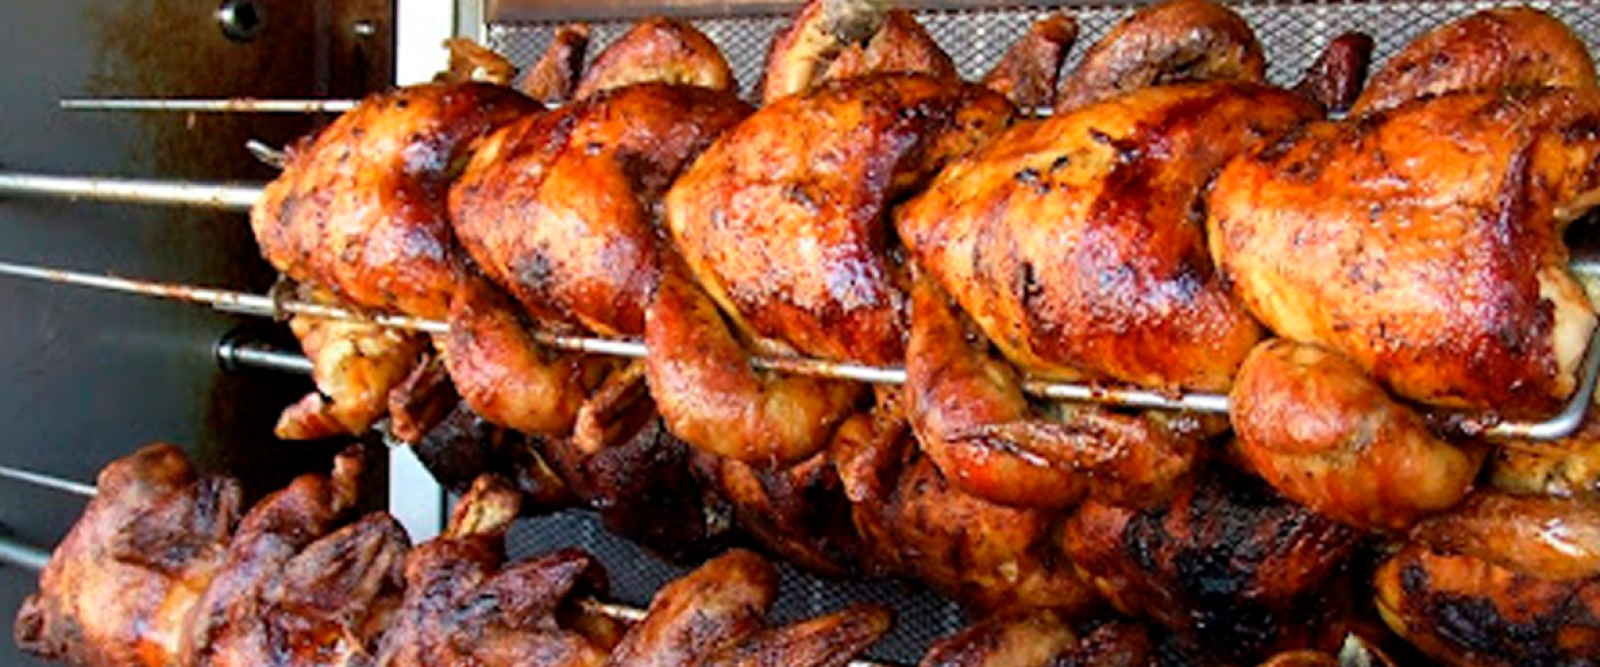 Supermercado de Romeral remojaba pollos en cloro para ocultar el mal olor